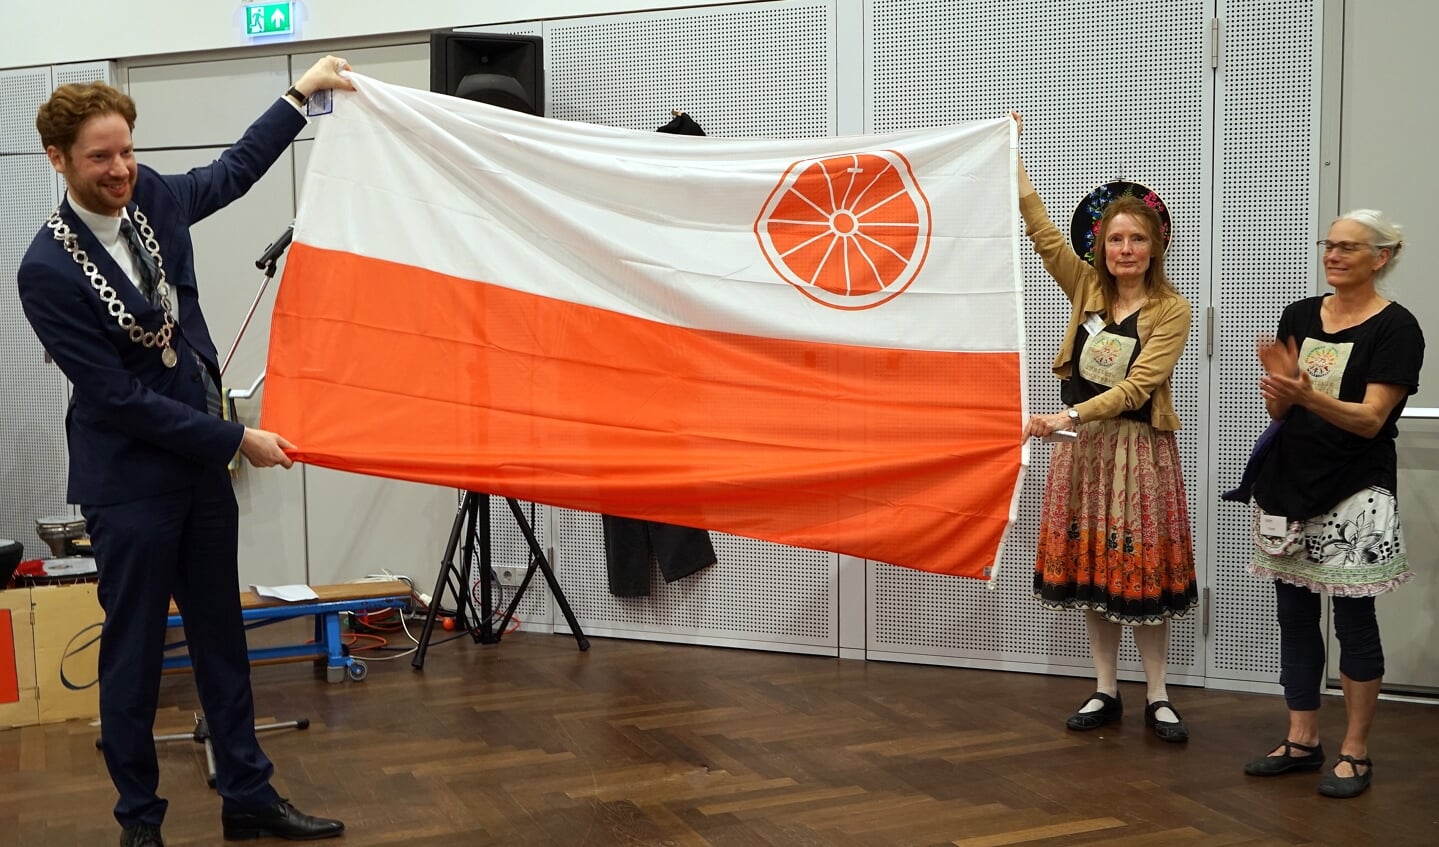 Burgemeester Floor Vermeulen en Paulette Klei (jubileumcommissie) tonen de vlag van Wageningen, het cadeau van de gemeente aan de Wieledansers